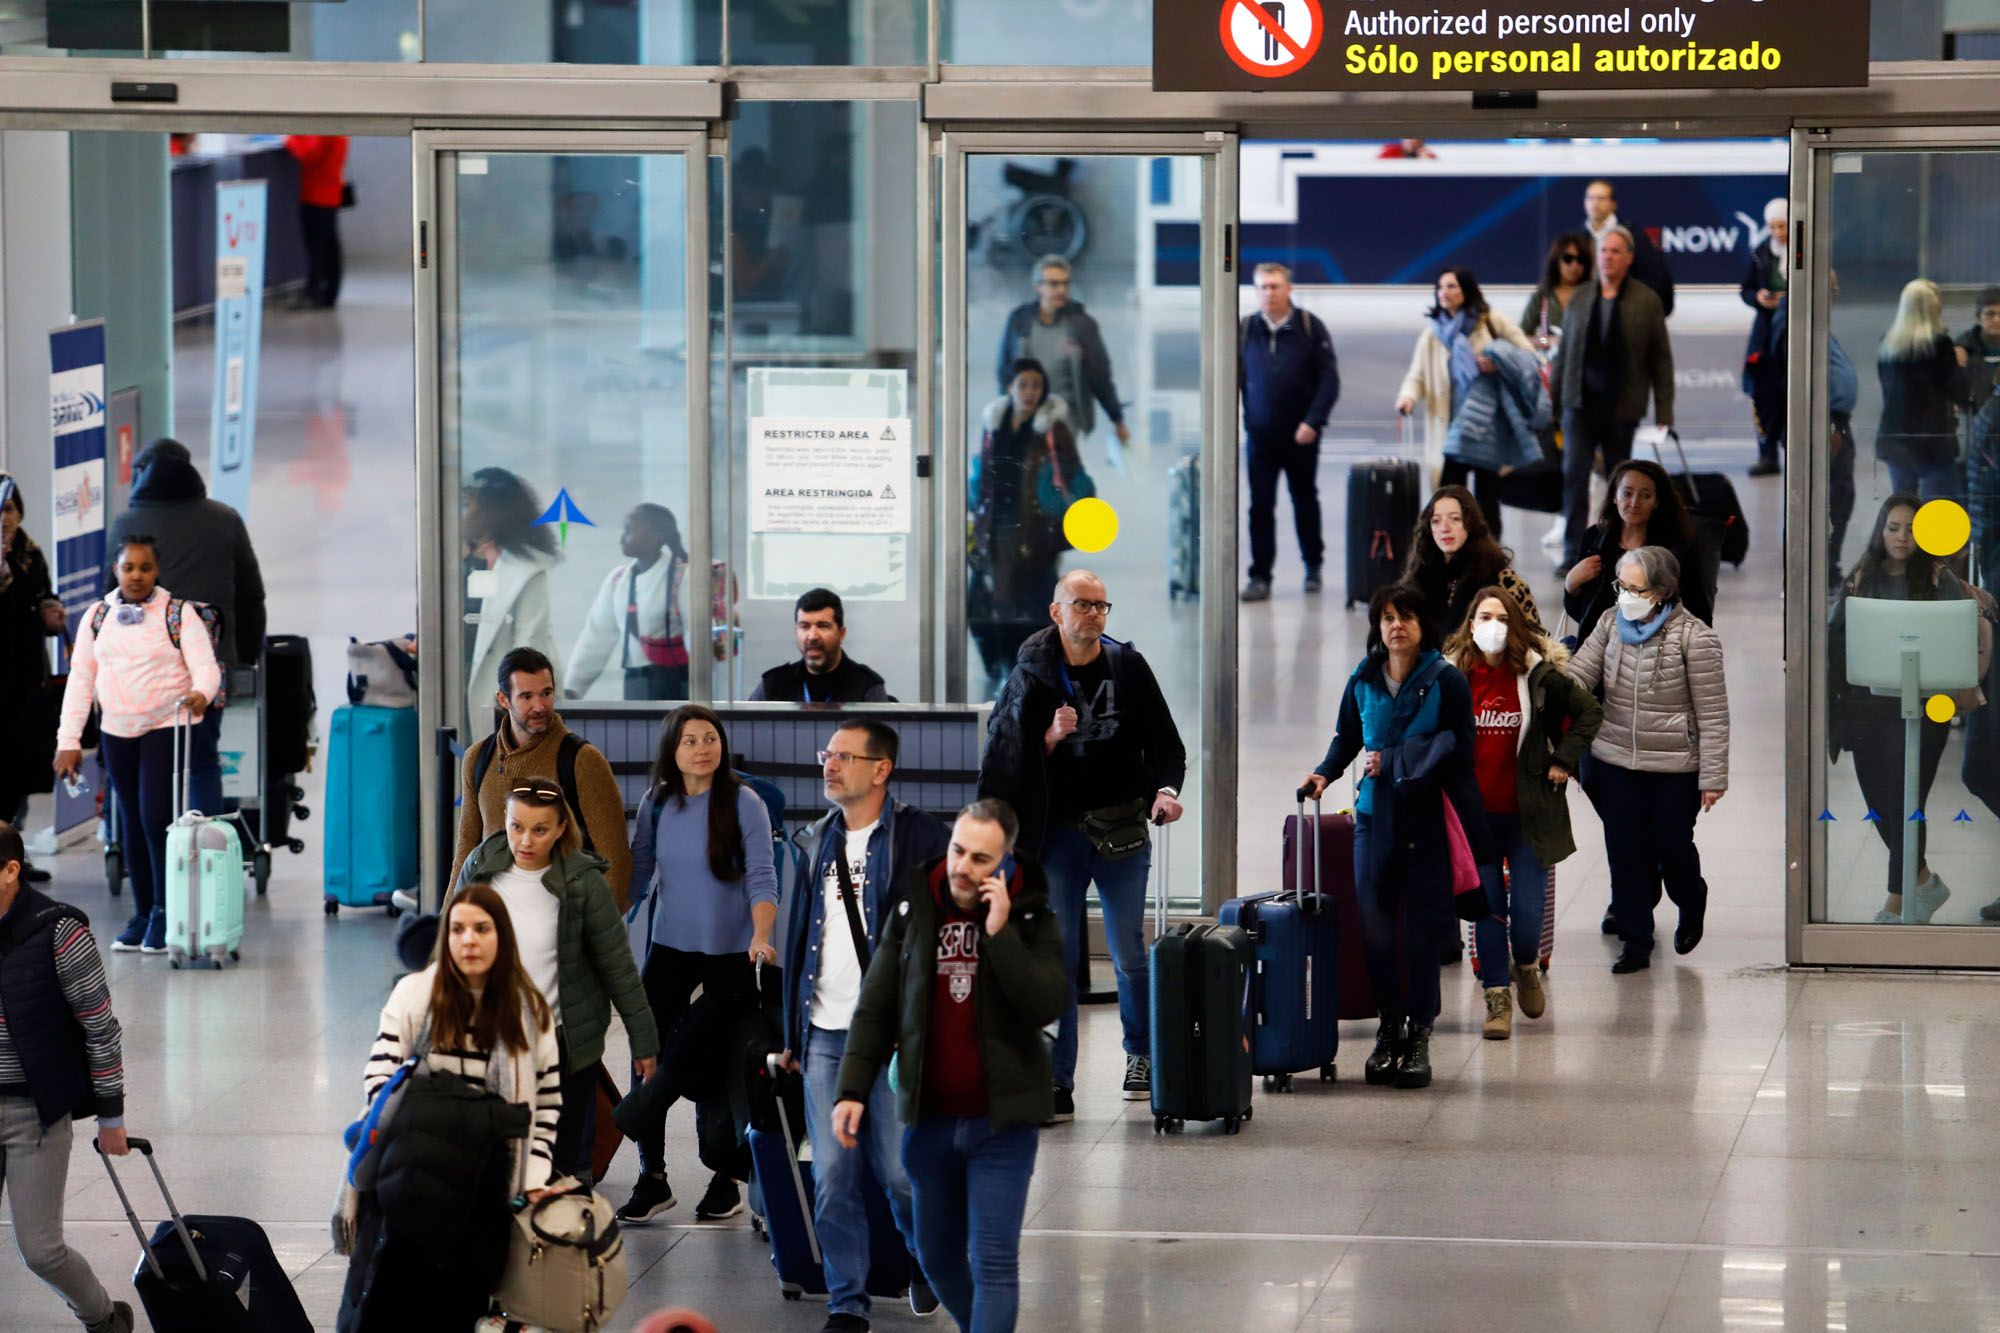 Movimiento de pasajeros en el aeropuerto de Málaga el 23 de diciembre.